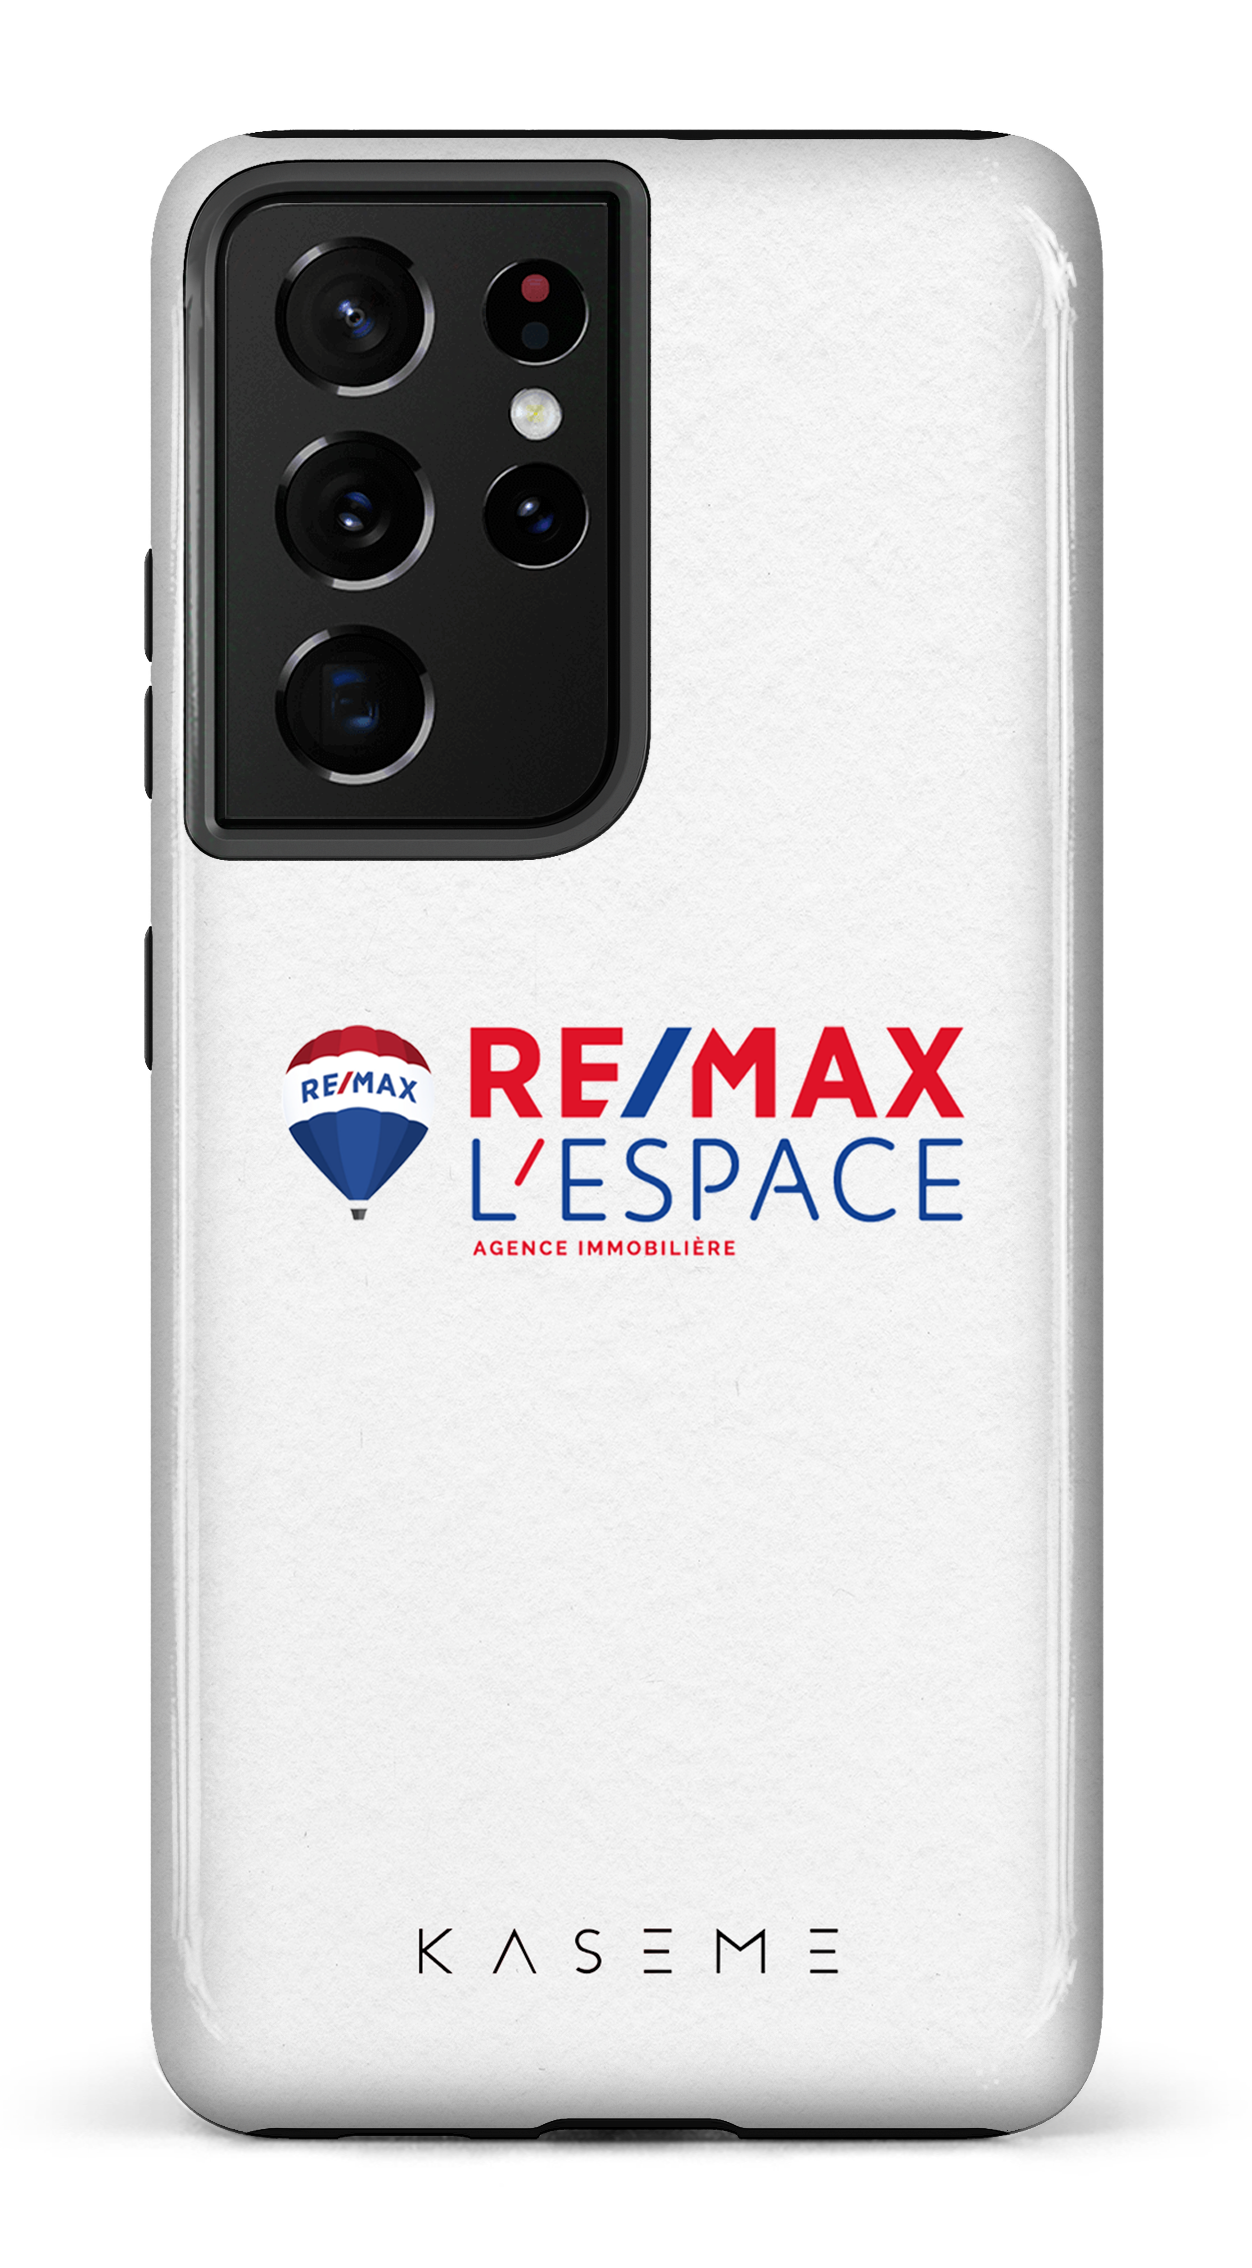 Remax L'Espace Blanc - Galaxy S21 Ultra